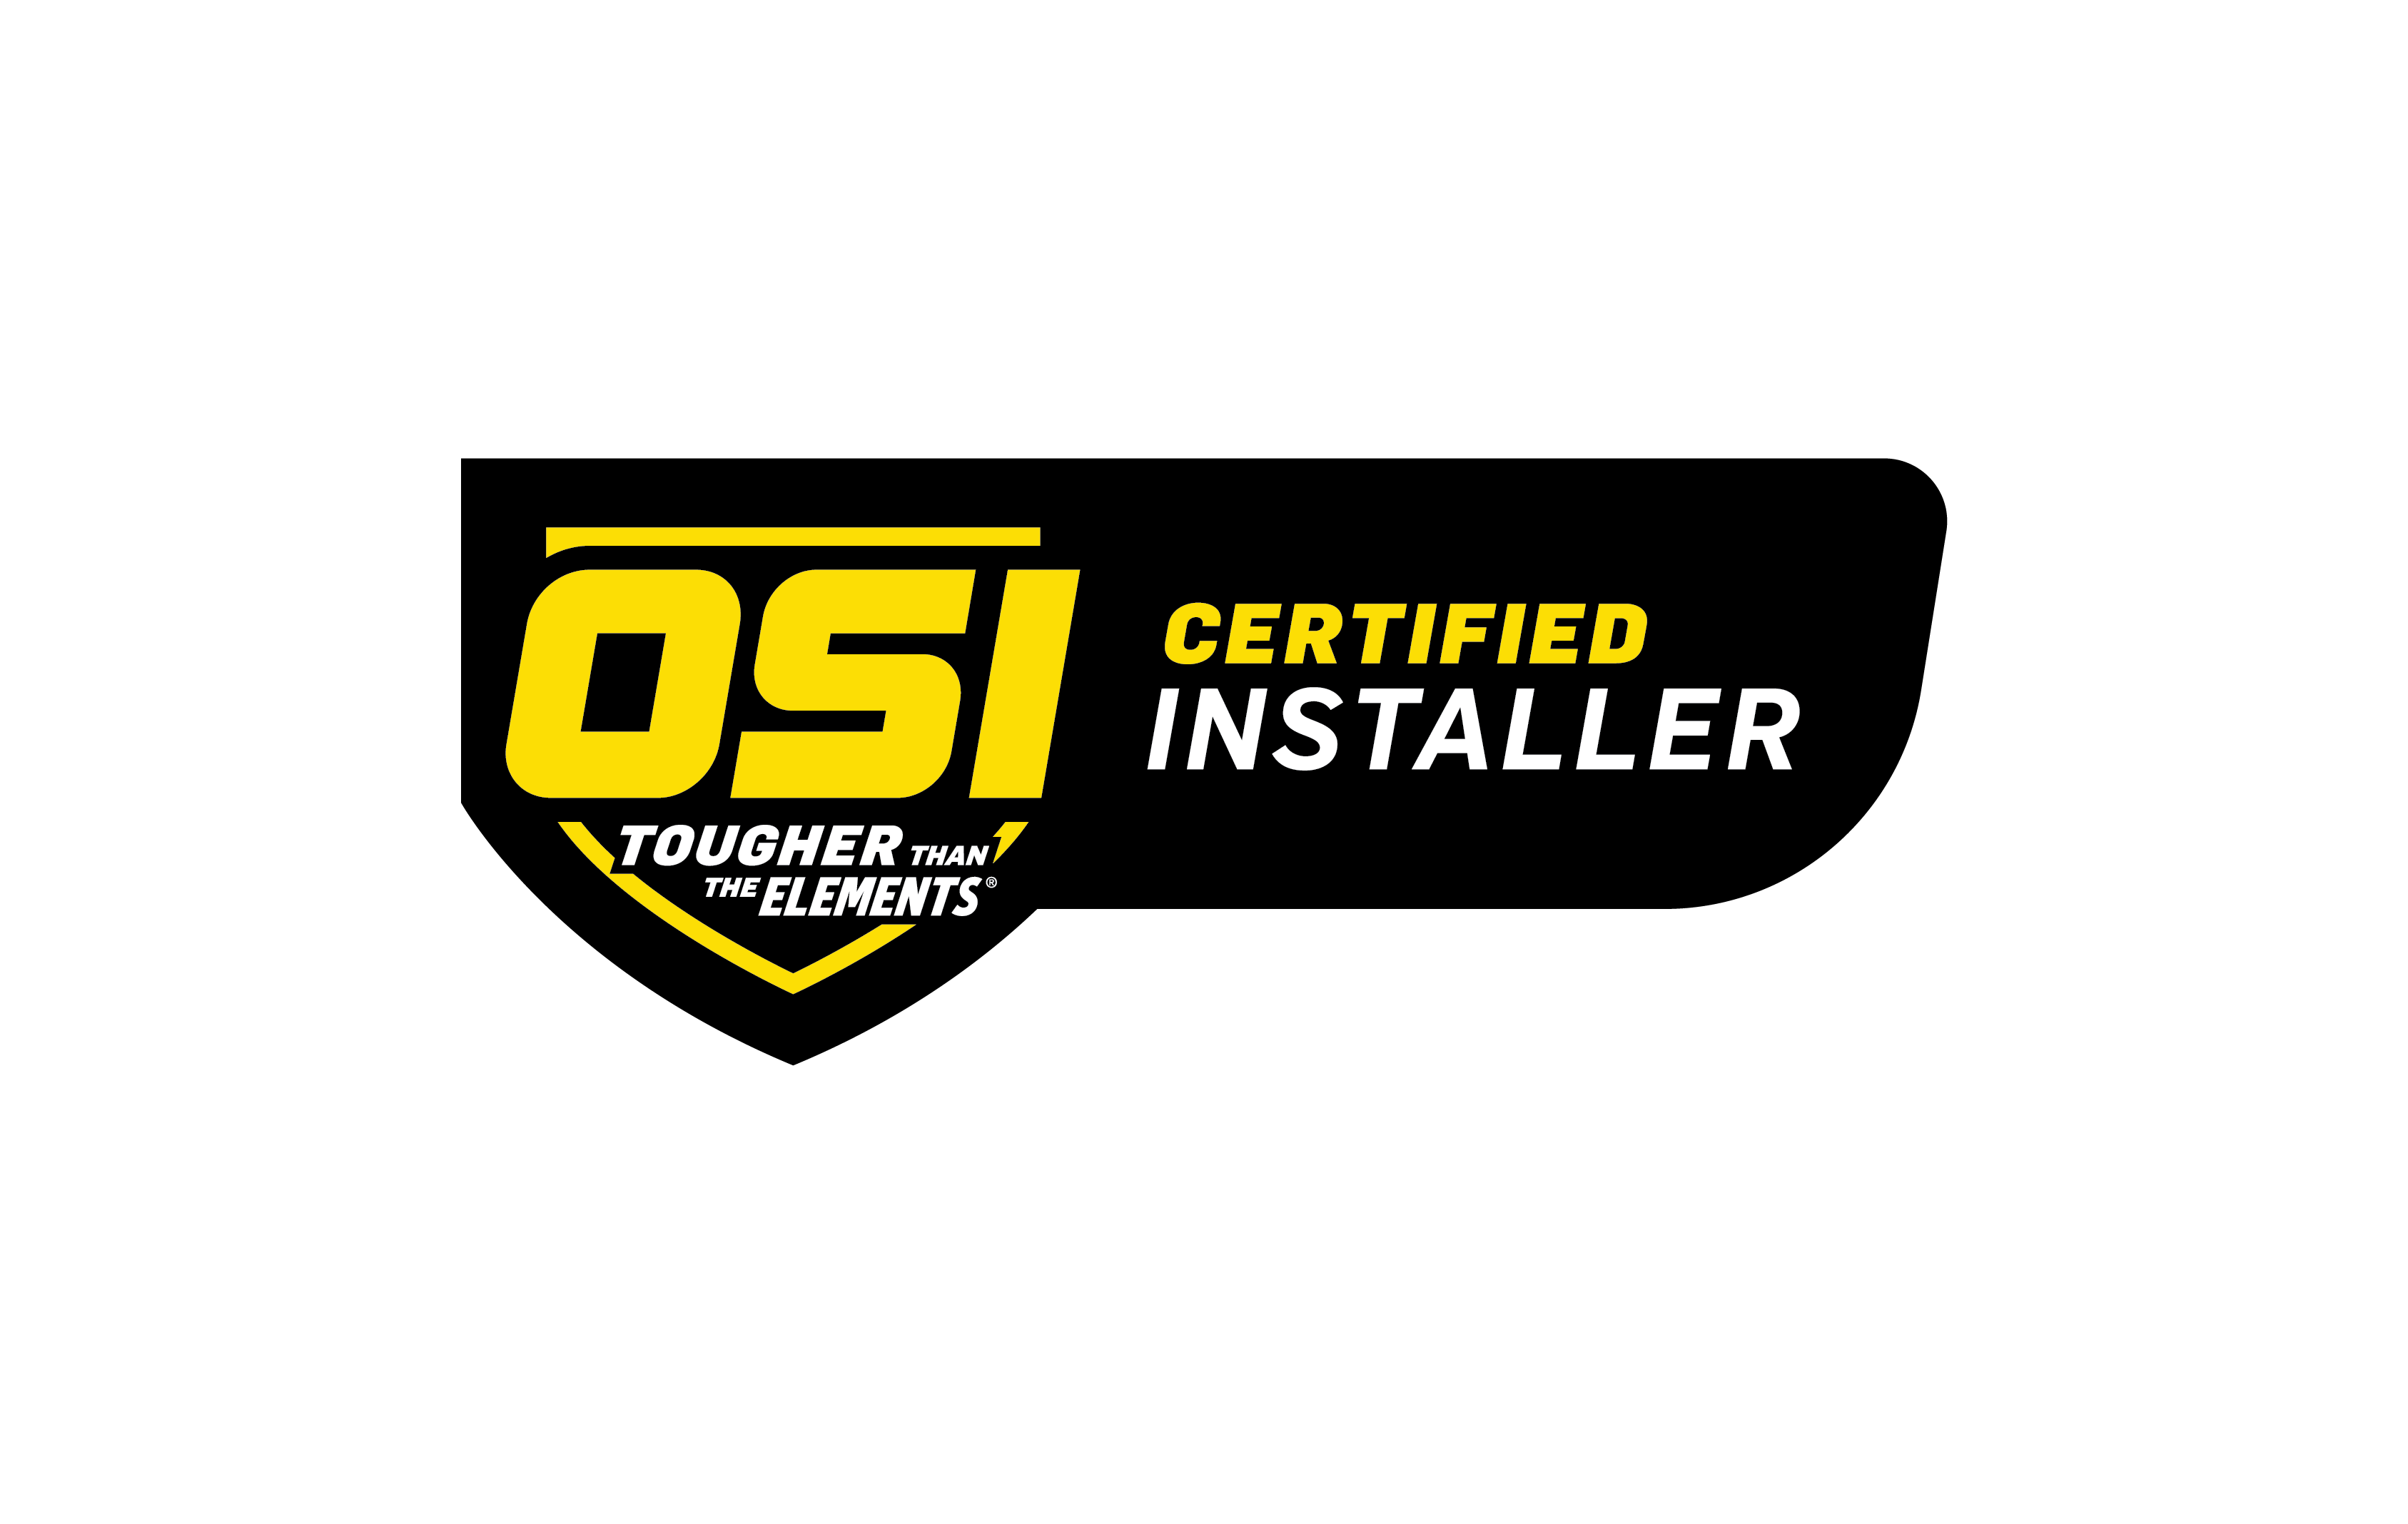 Certified Installer - CMYK